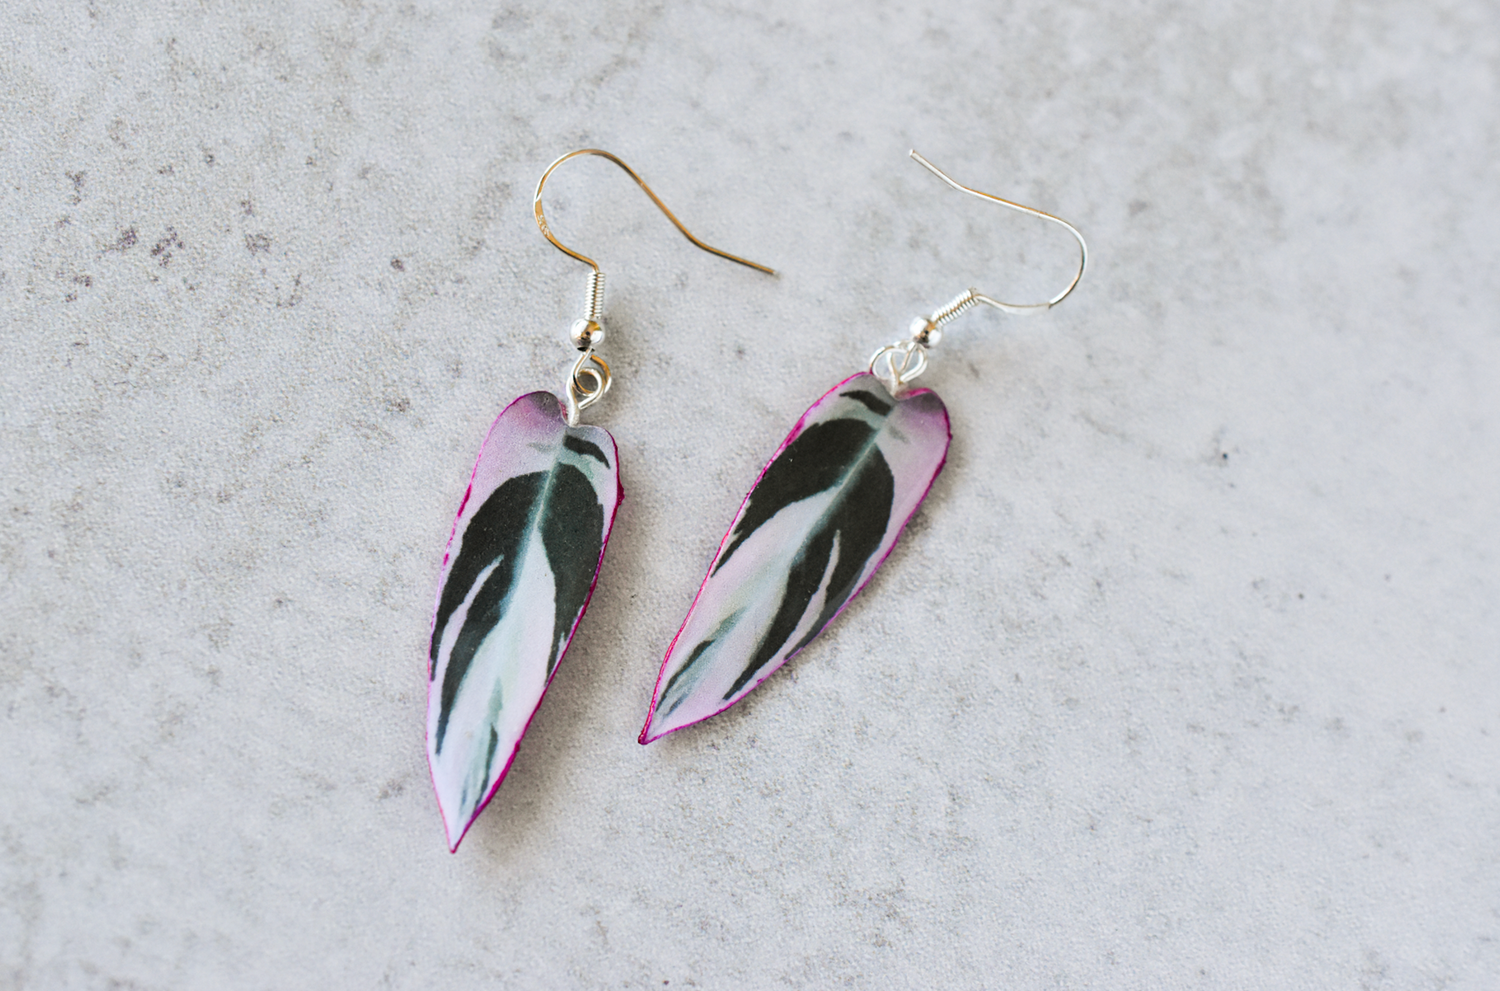 Stromanthe Triostar Plant Earrings | Leaf Earrings